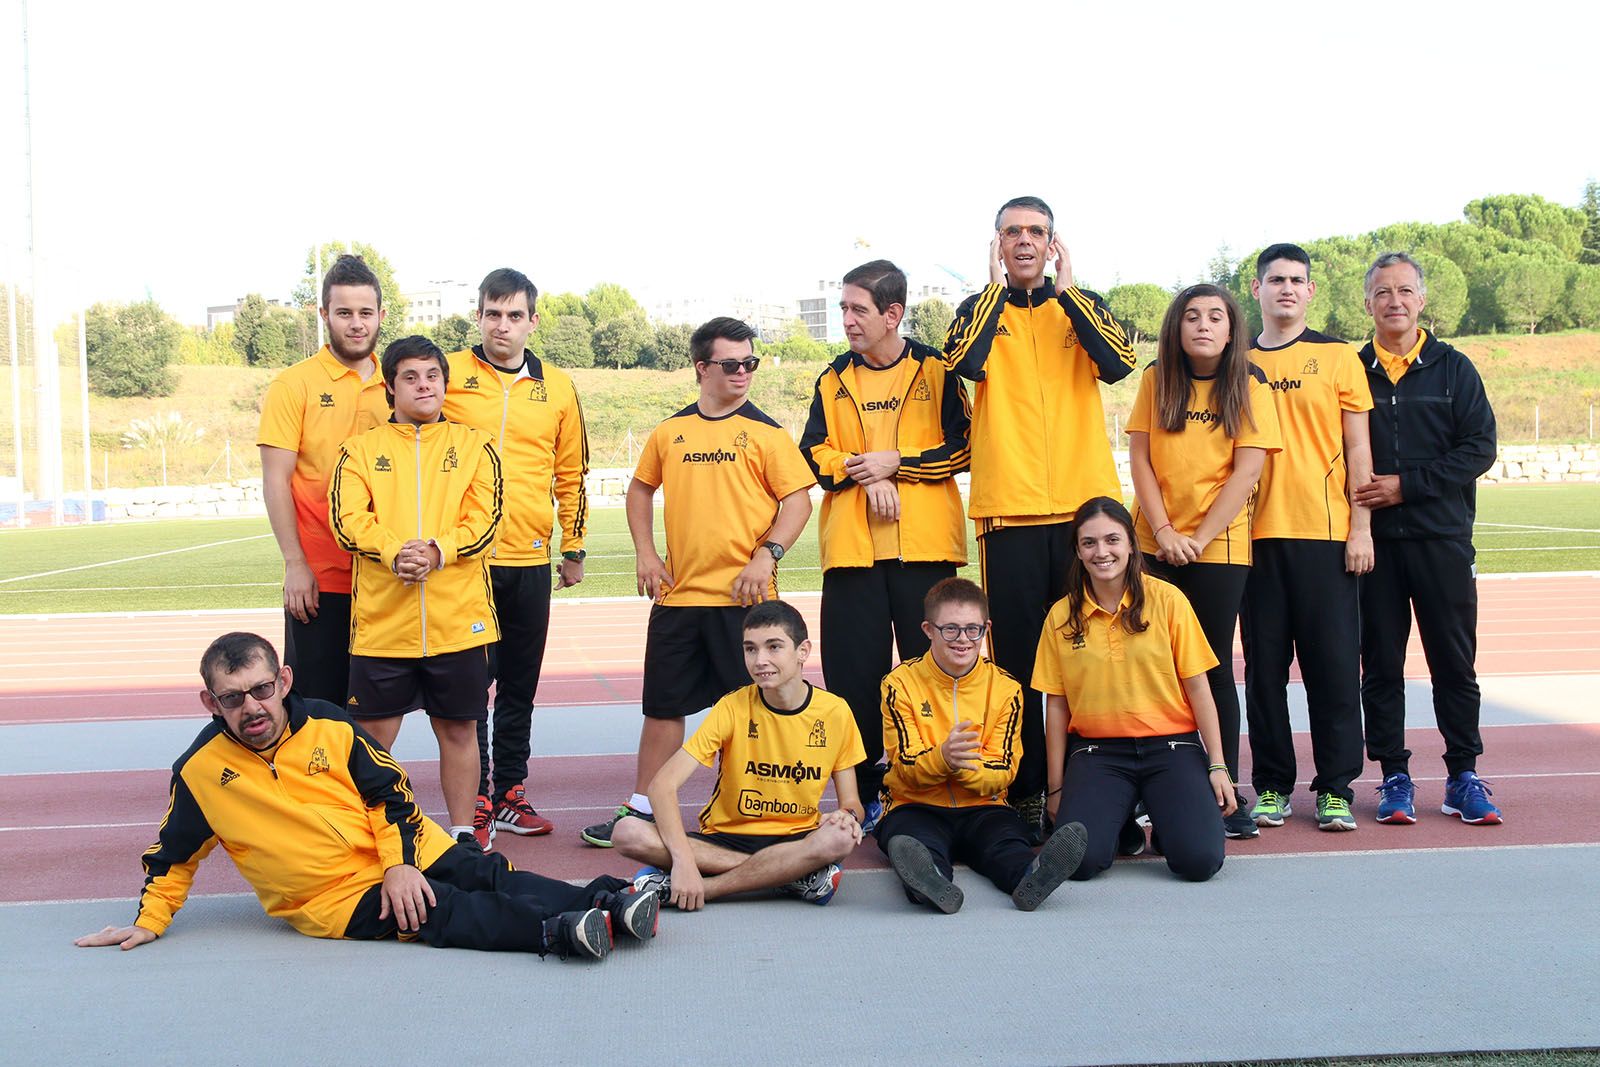 Presentació de les seccions d'atletisme, rítmica i trial running del Club Muntanyenc. Foto: Lali Álvarez